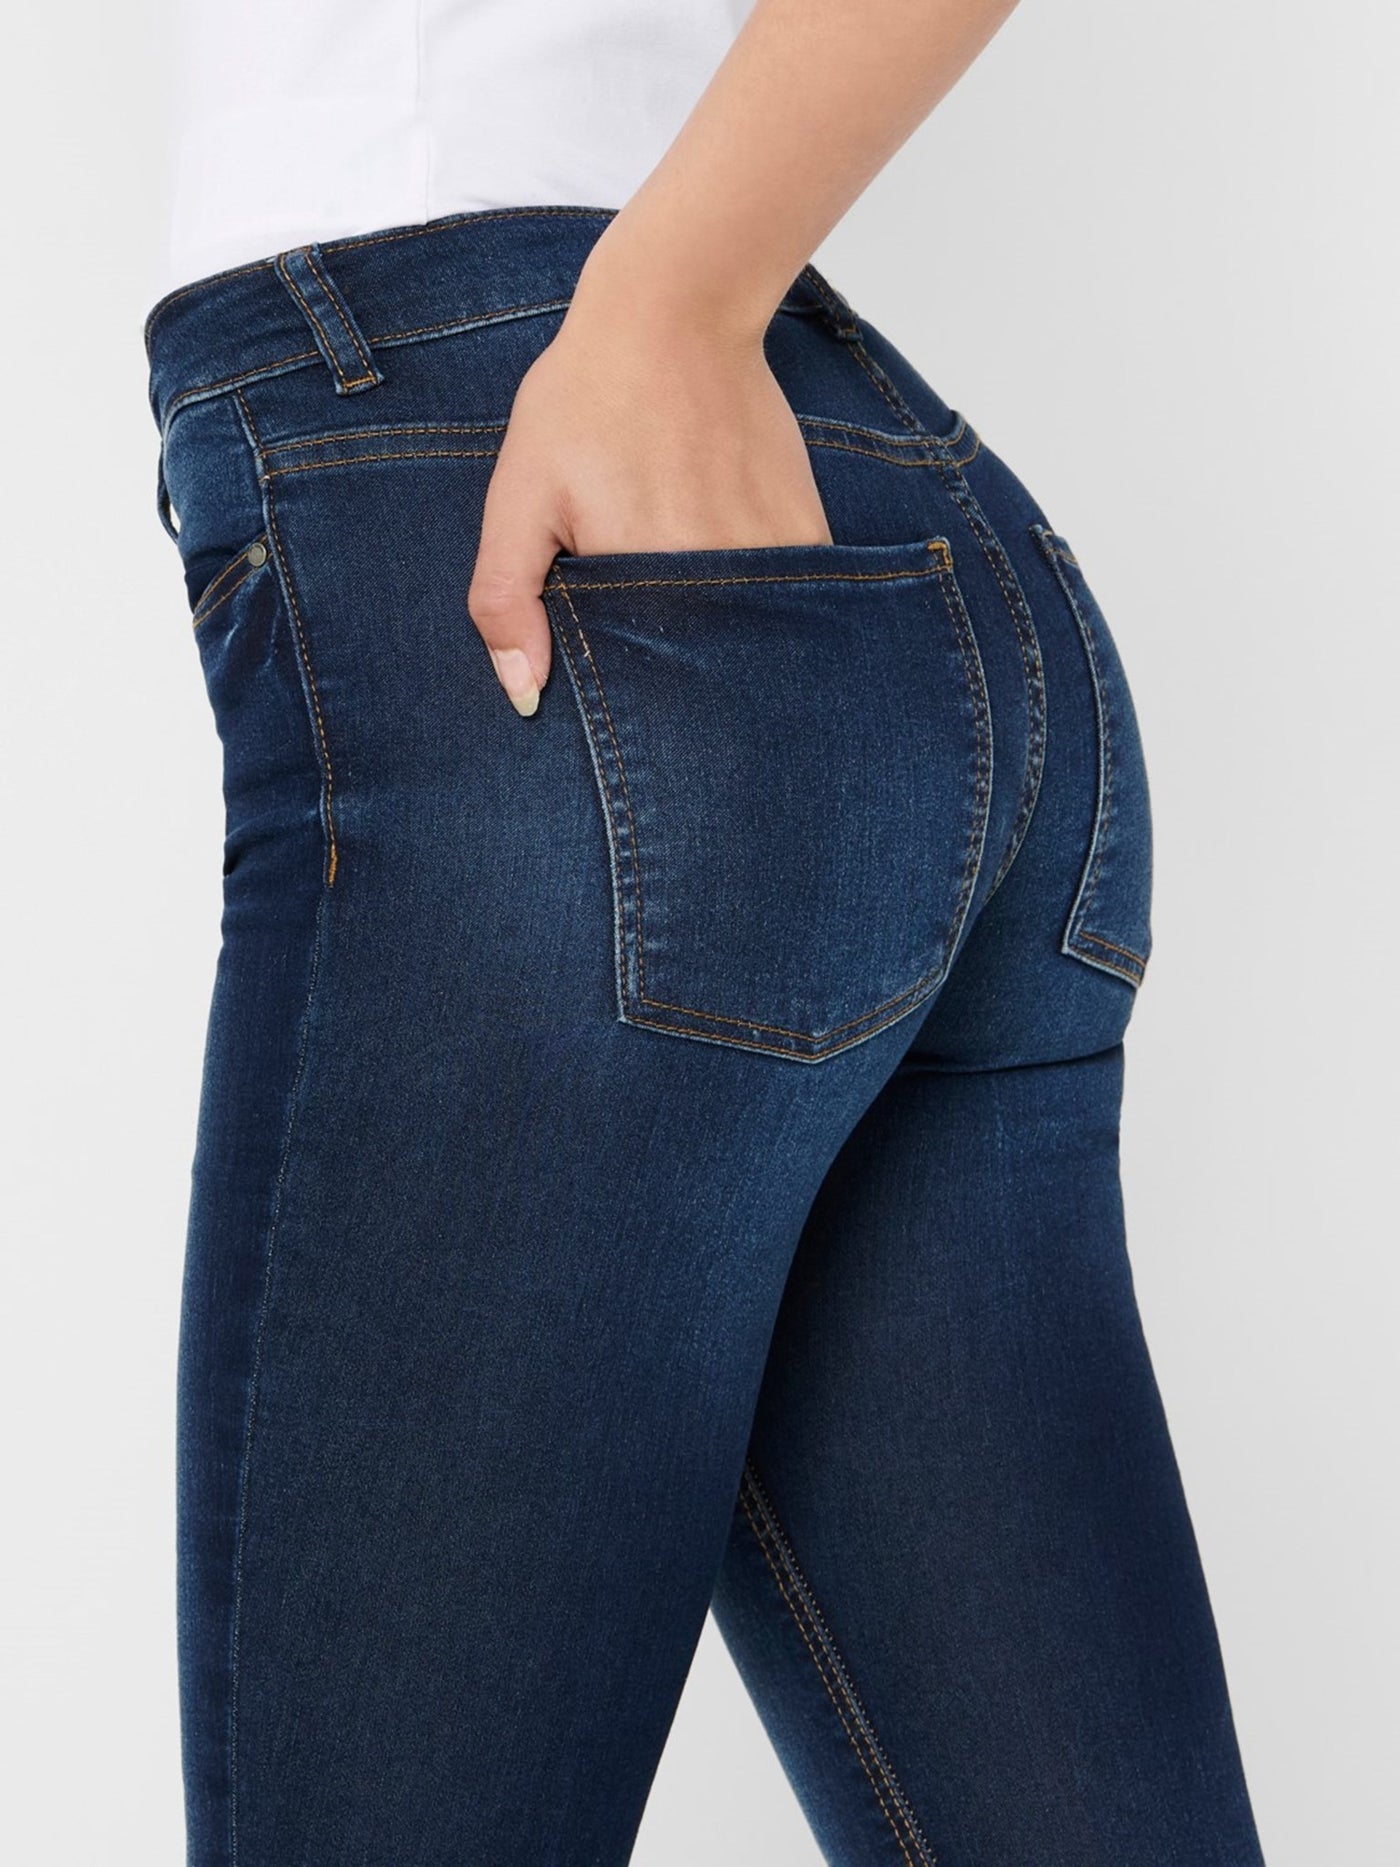 Performance Jeans - Blå denim (mid waist) - Jacqueline de Yong 6